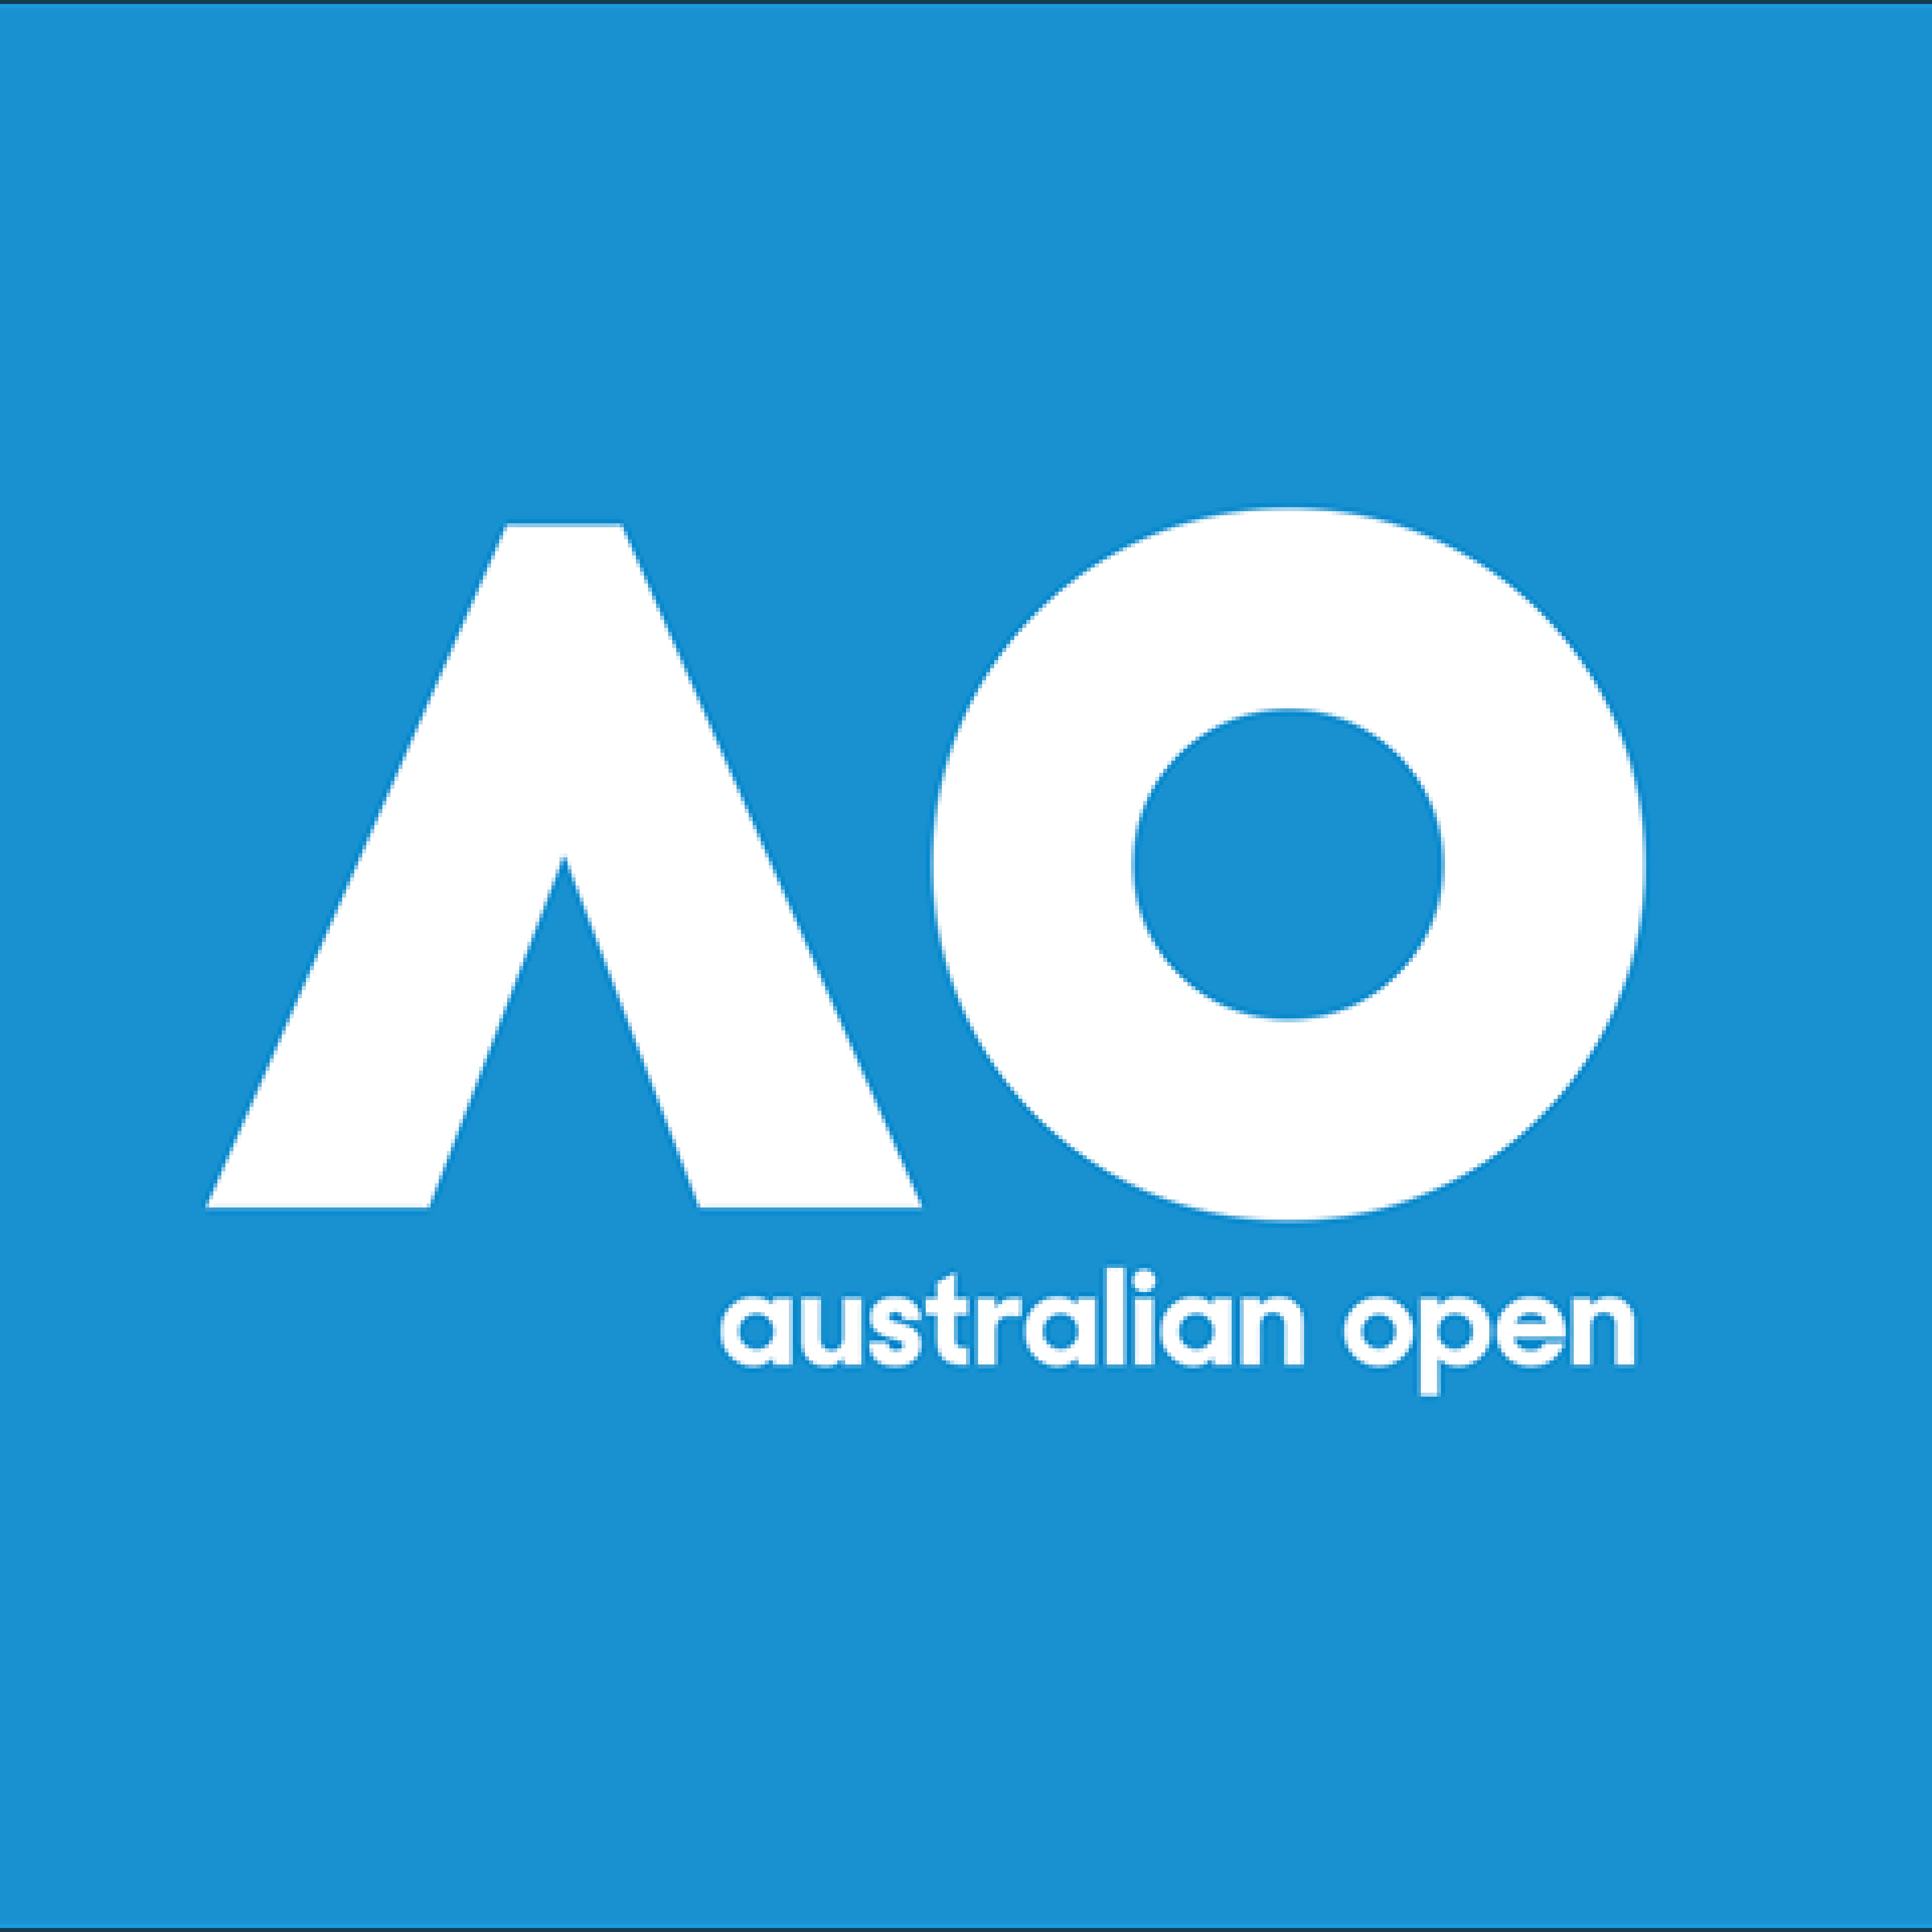 Australian Open 2019